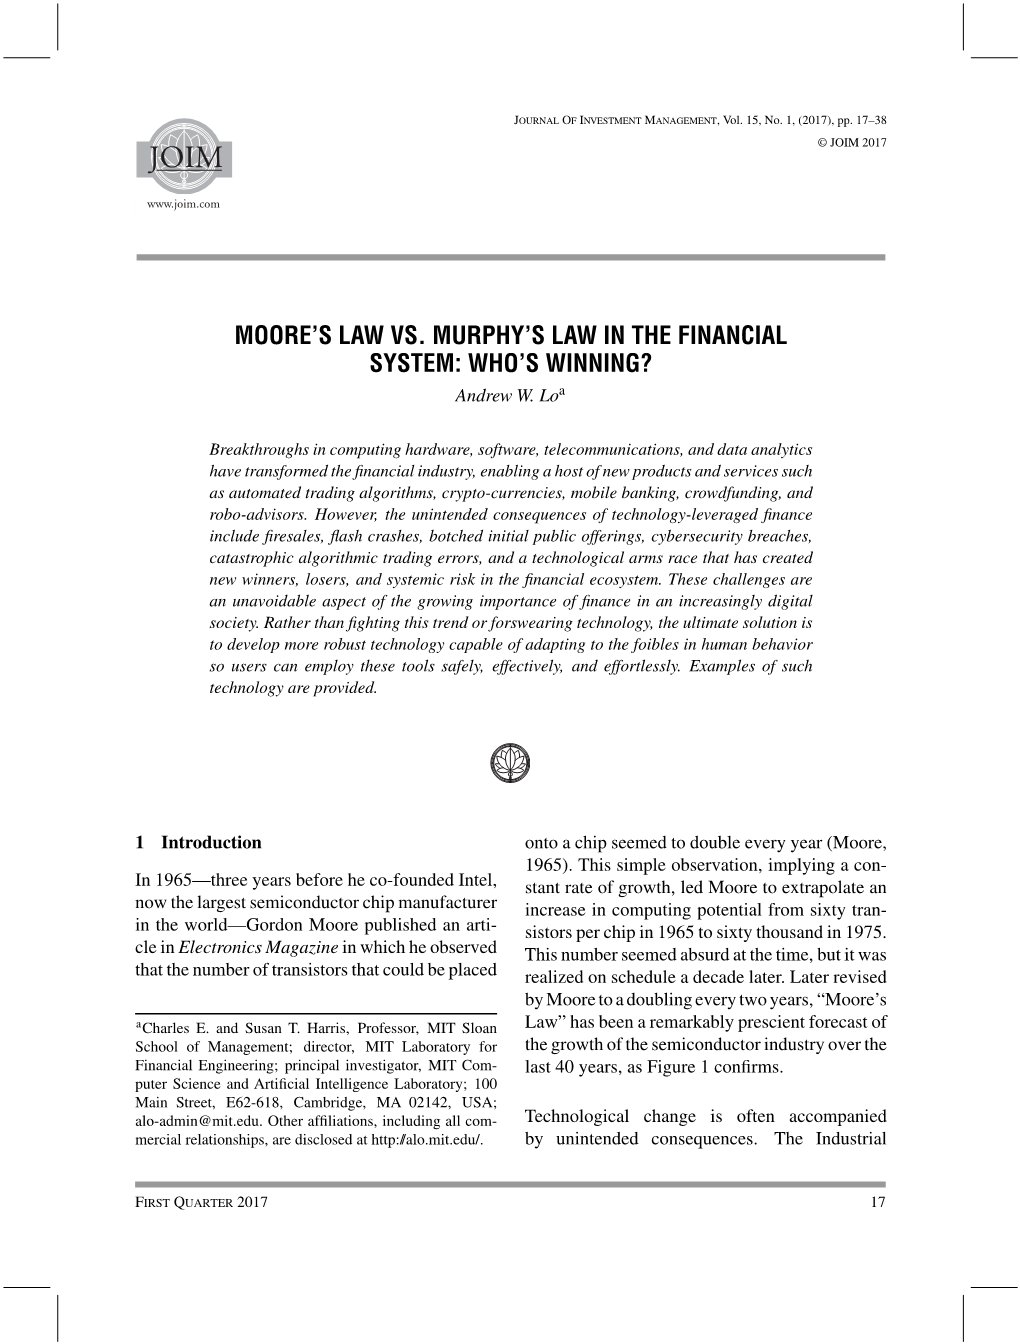 Moore's Law Vs. Murphy's Law in the Financial